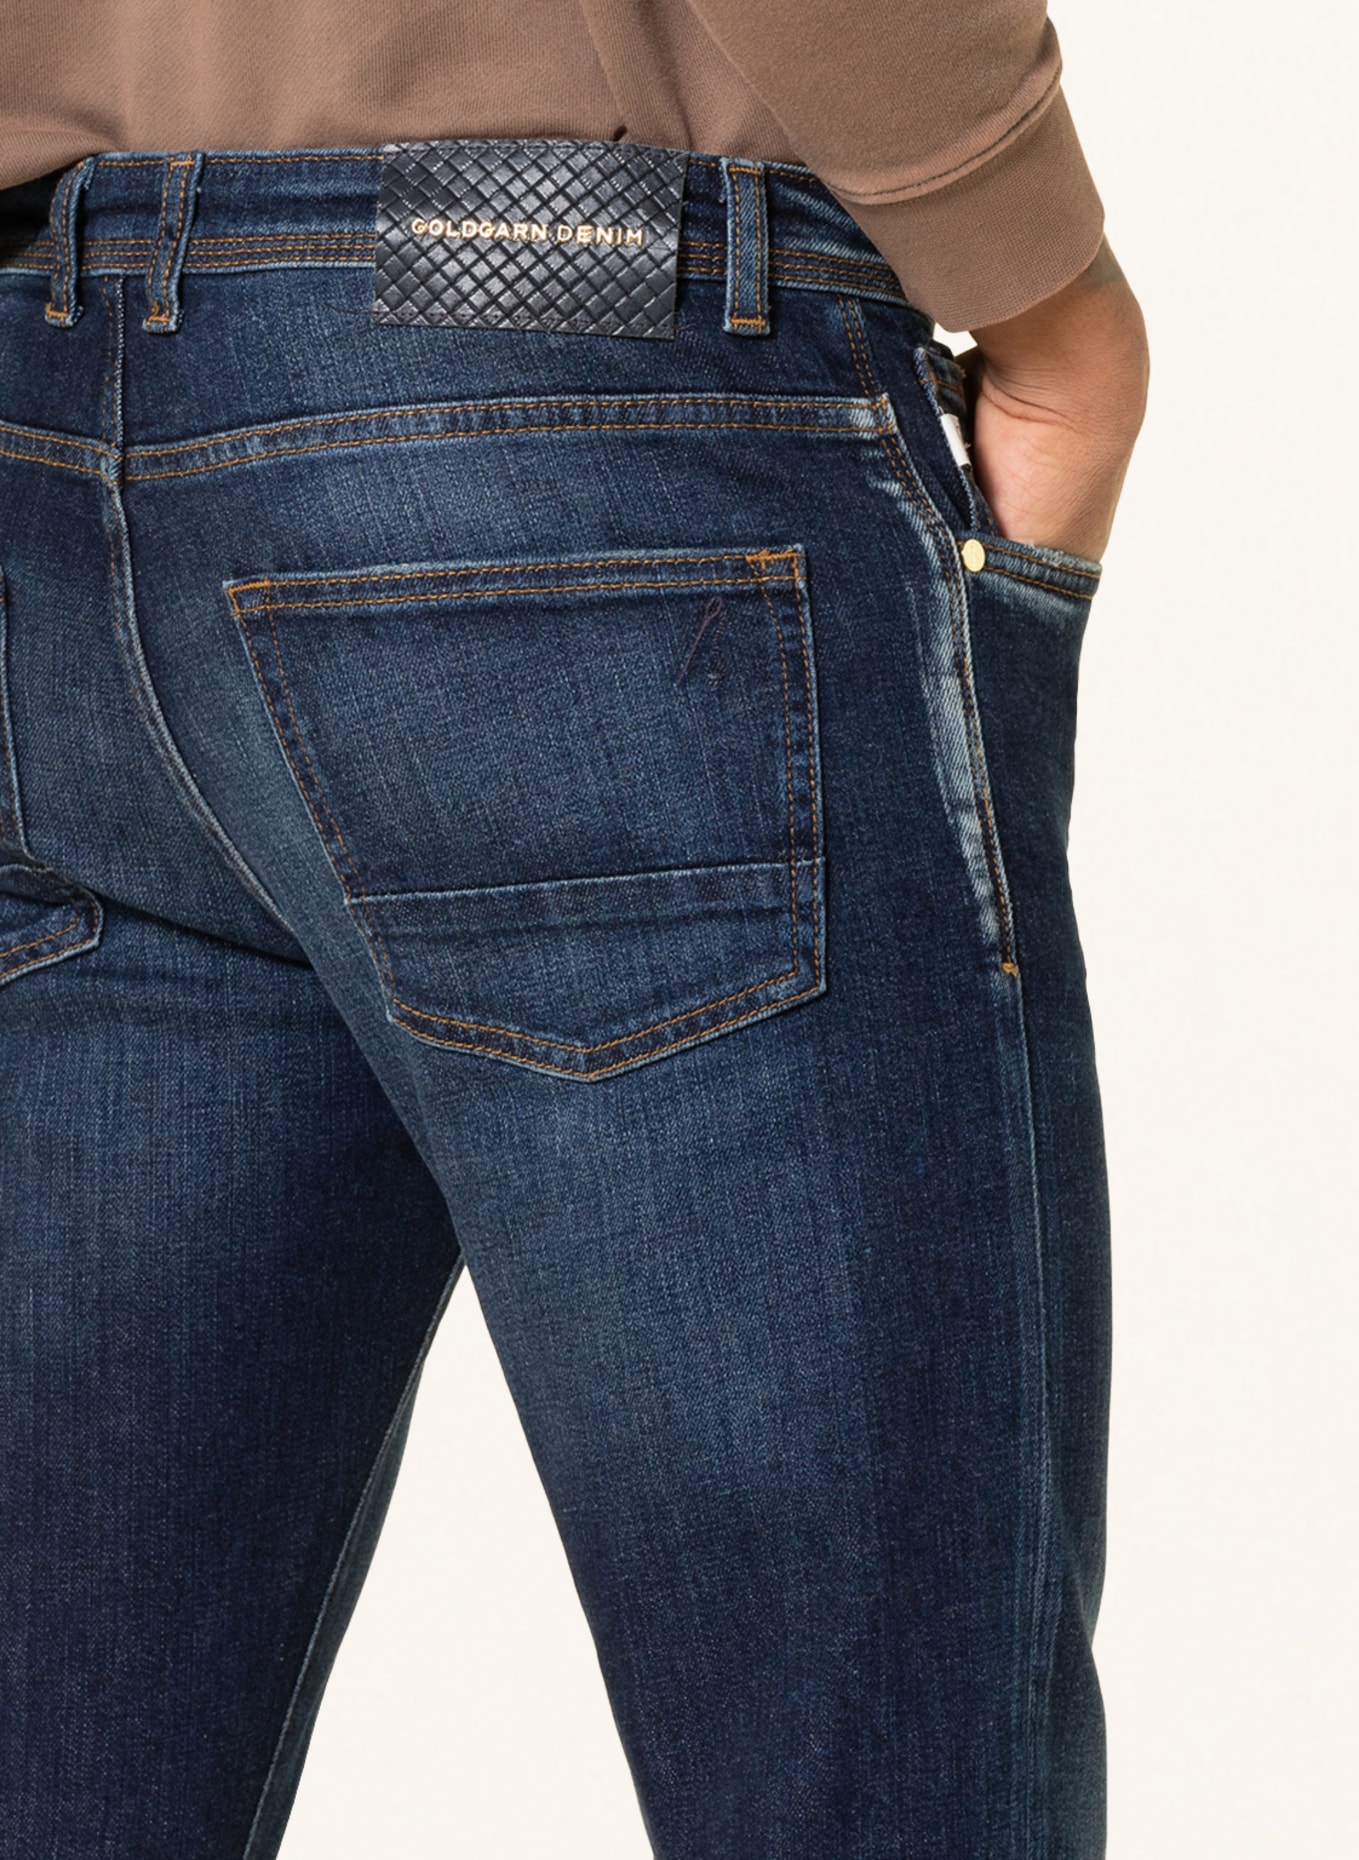 GOLDGARN DENIM Jeans U2 Slim Fit, Farbe: 1030 DARK BLUE (Bild 5)